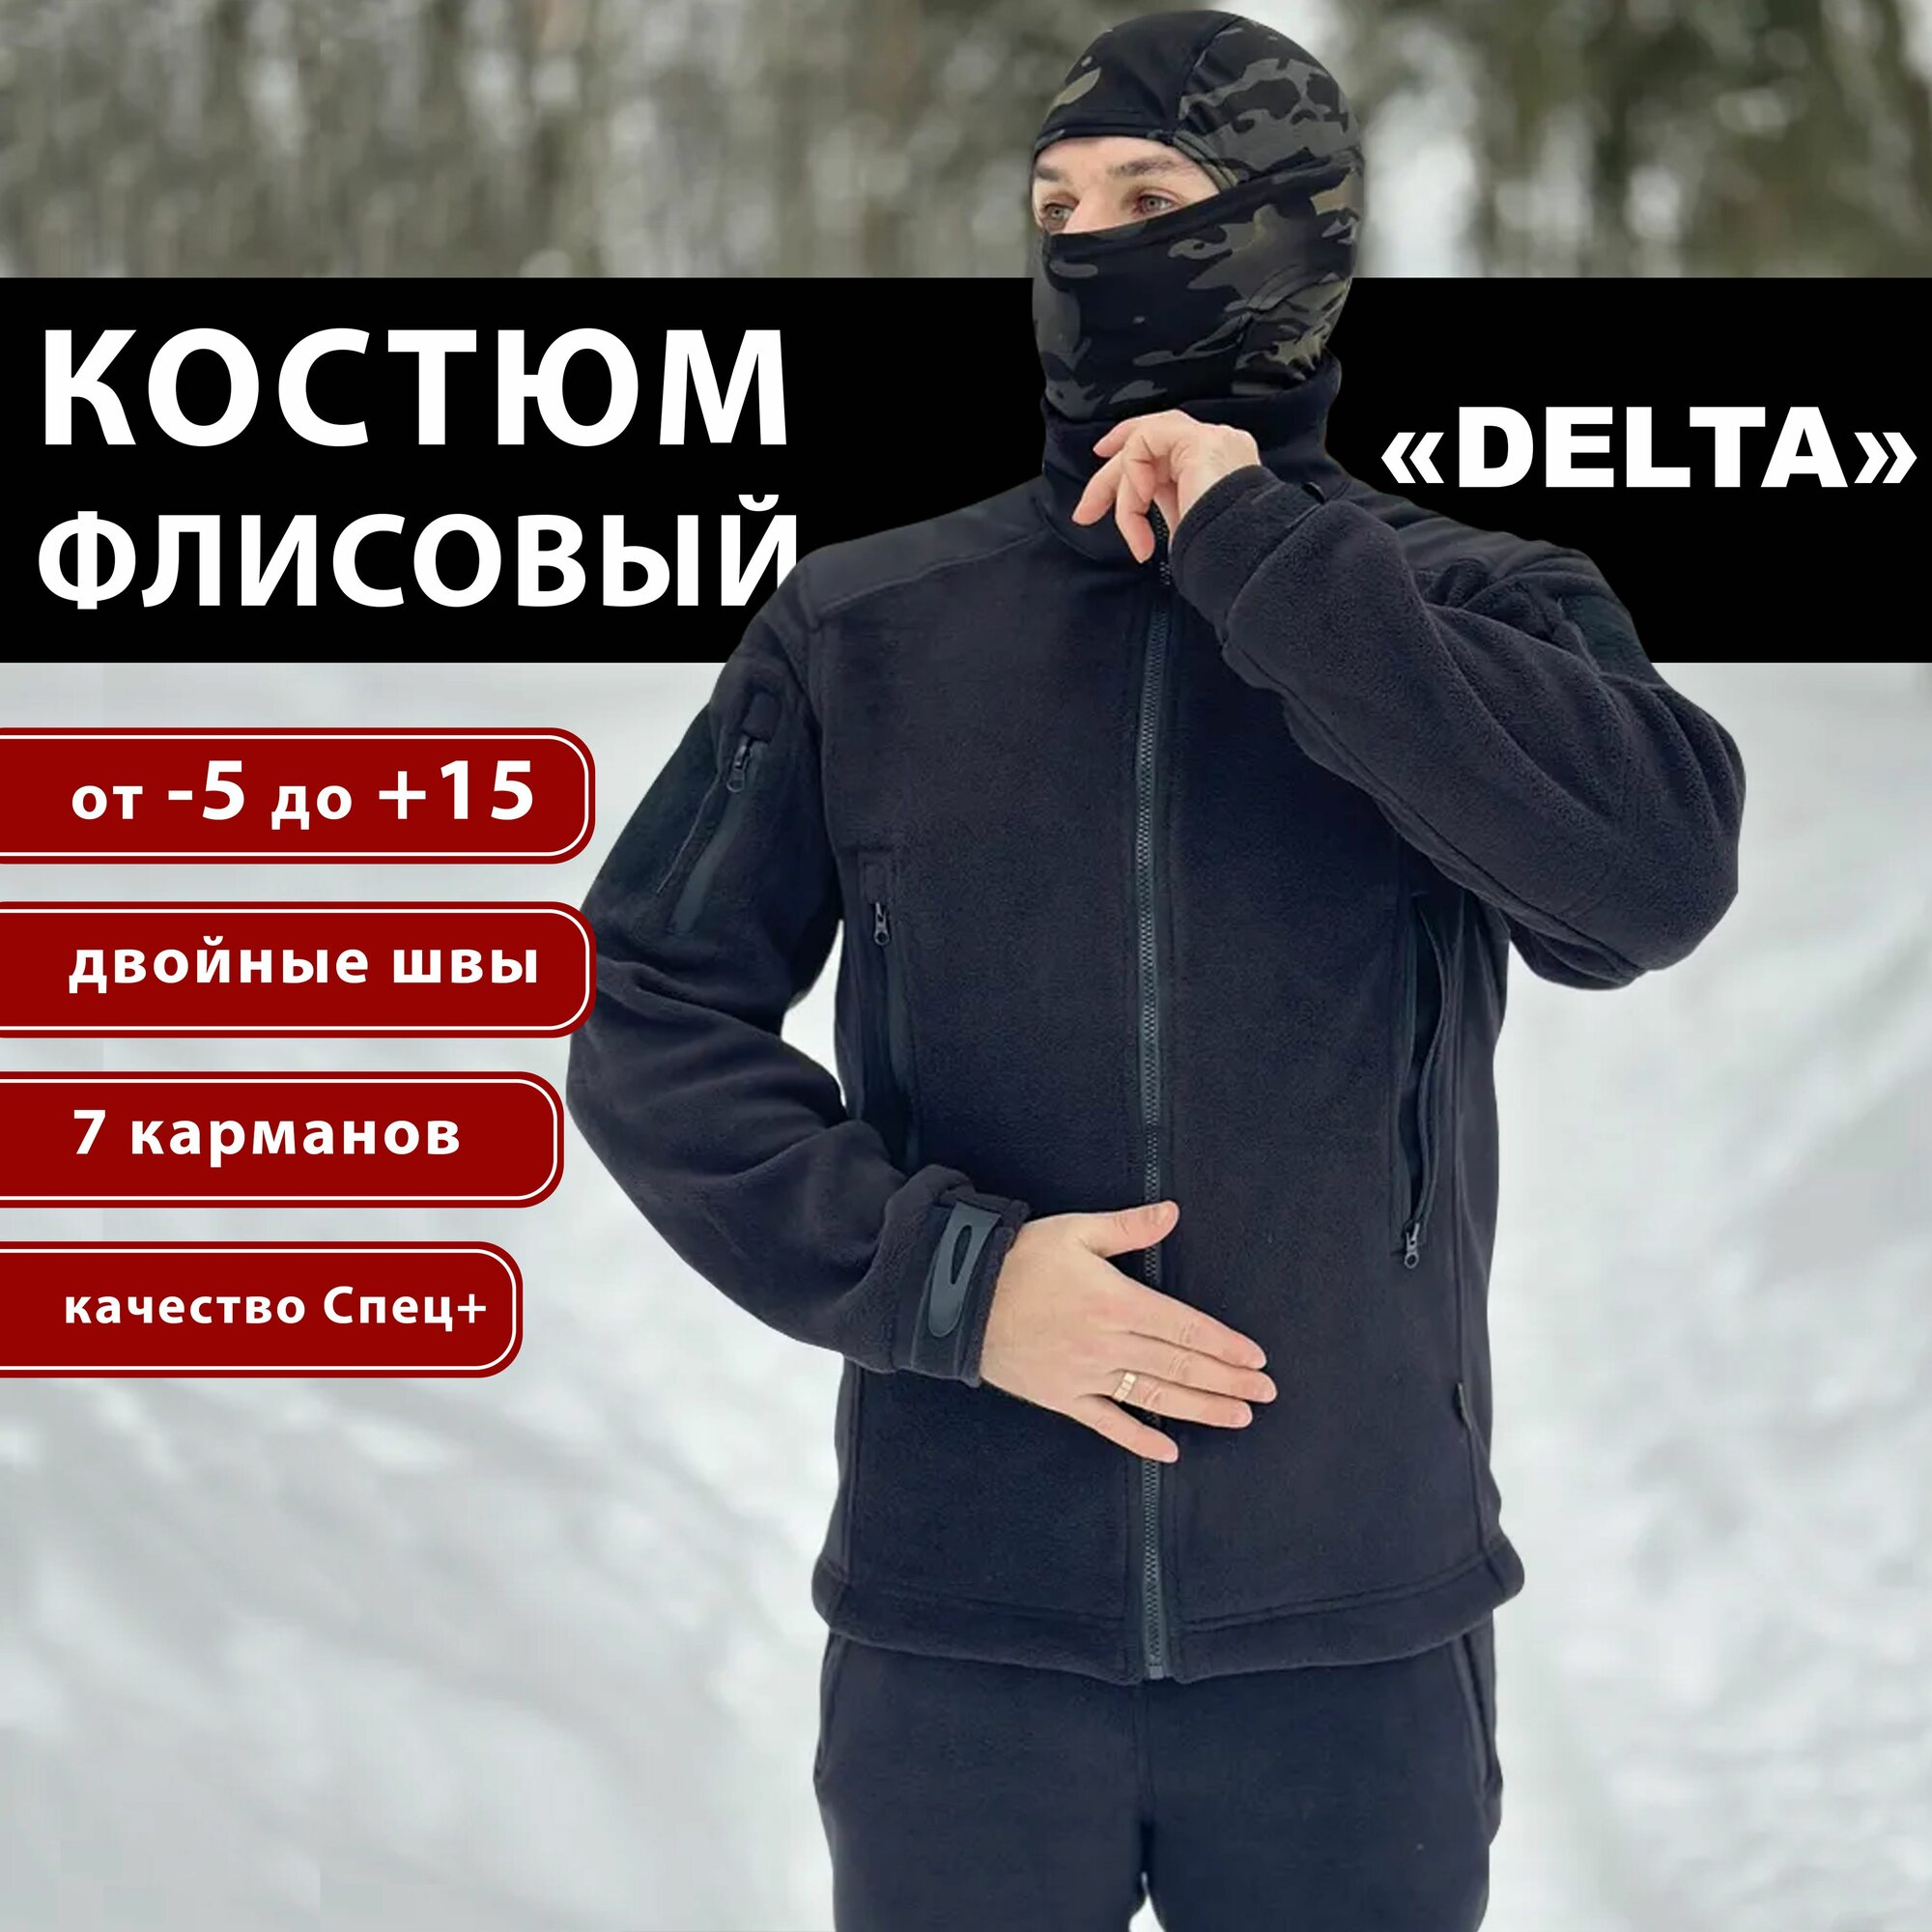 Костюм мужской флисовый "DELTA" черный / костюм на флисе демисезонный / костюм зимний на флисе